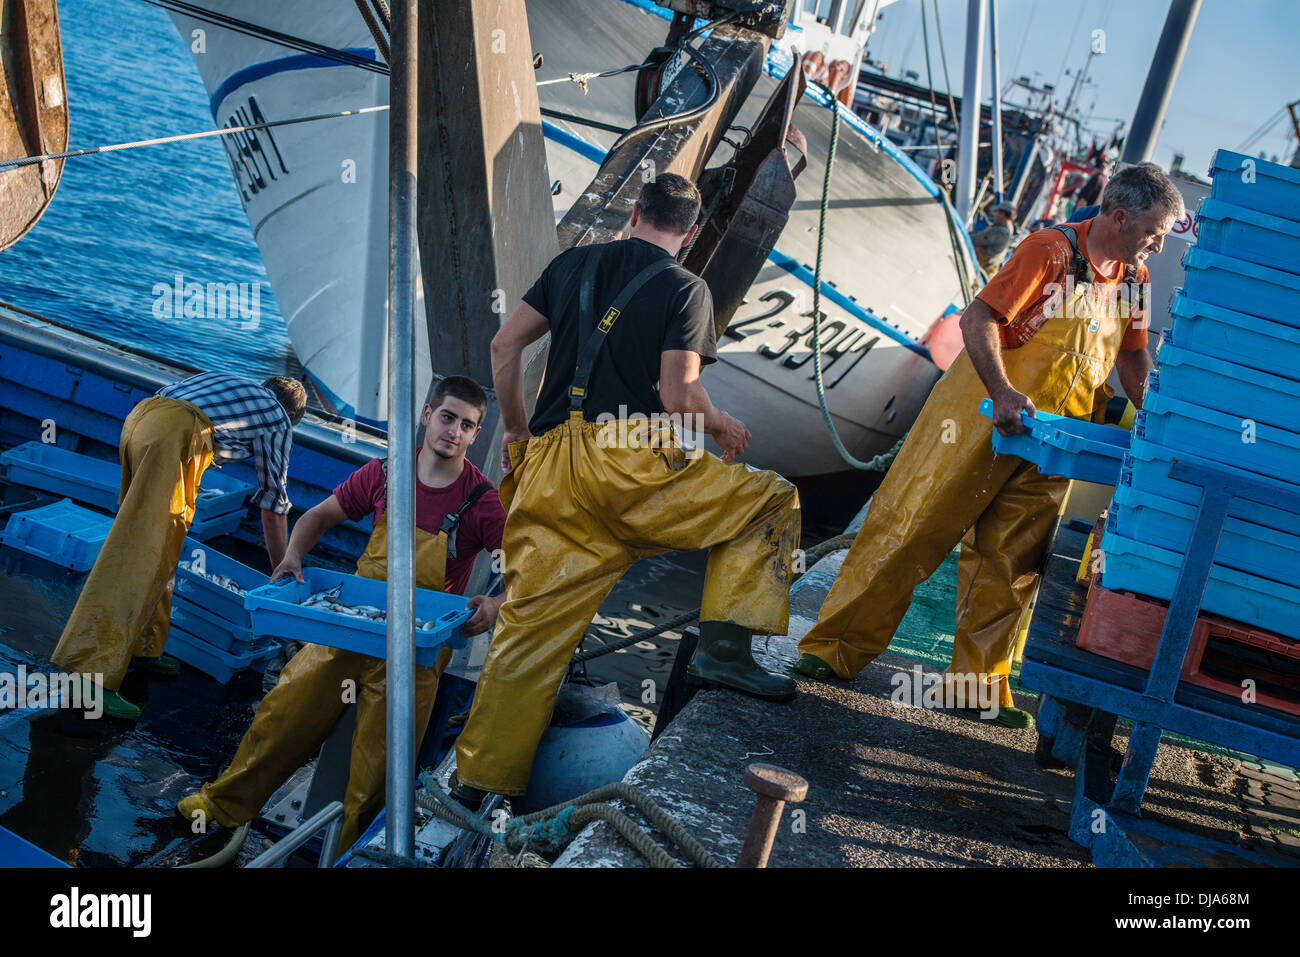 Fisherman imballaggio le loro catture per il mercato, Palamos, Spagna Foto Stock